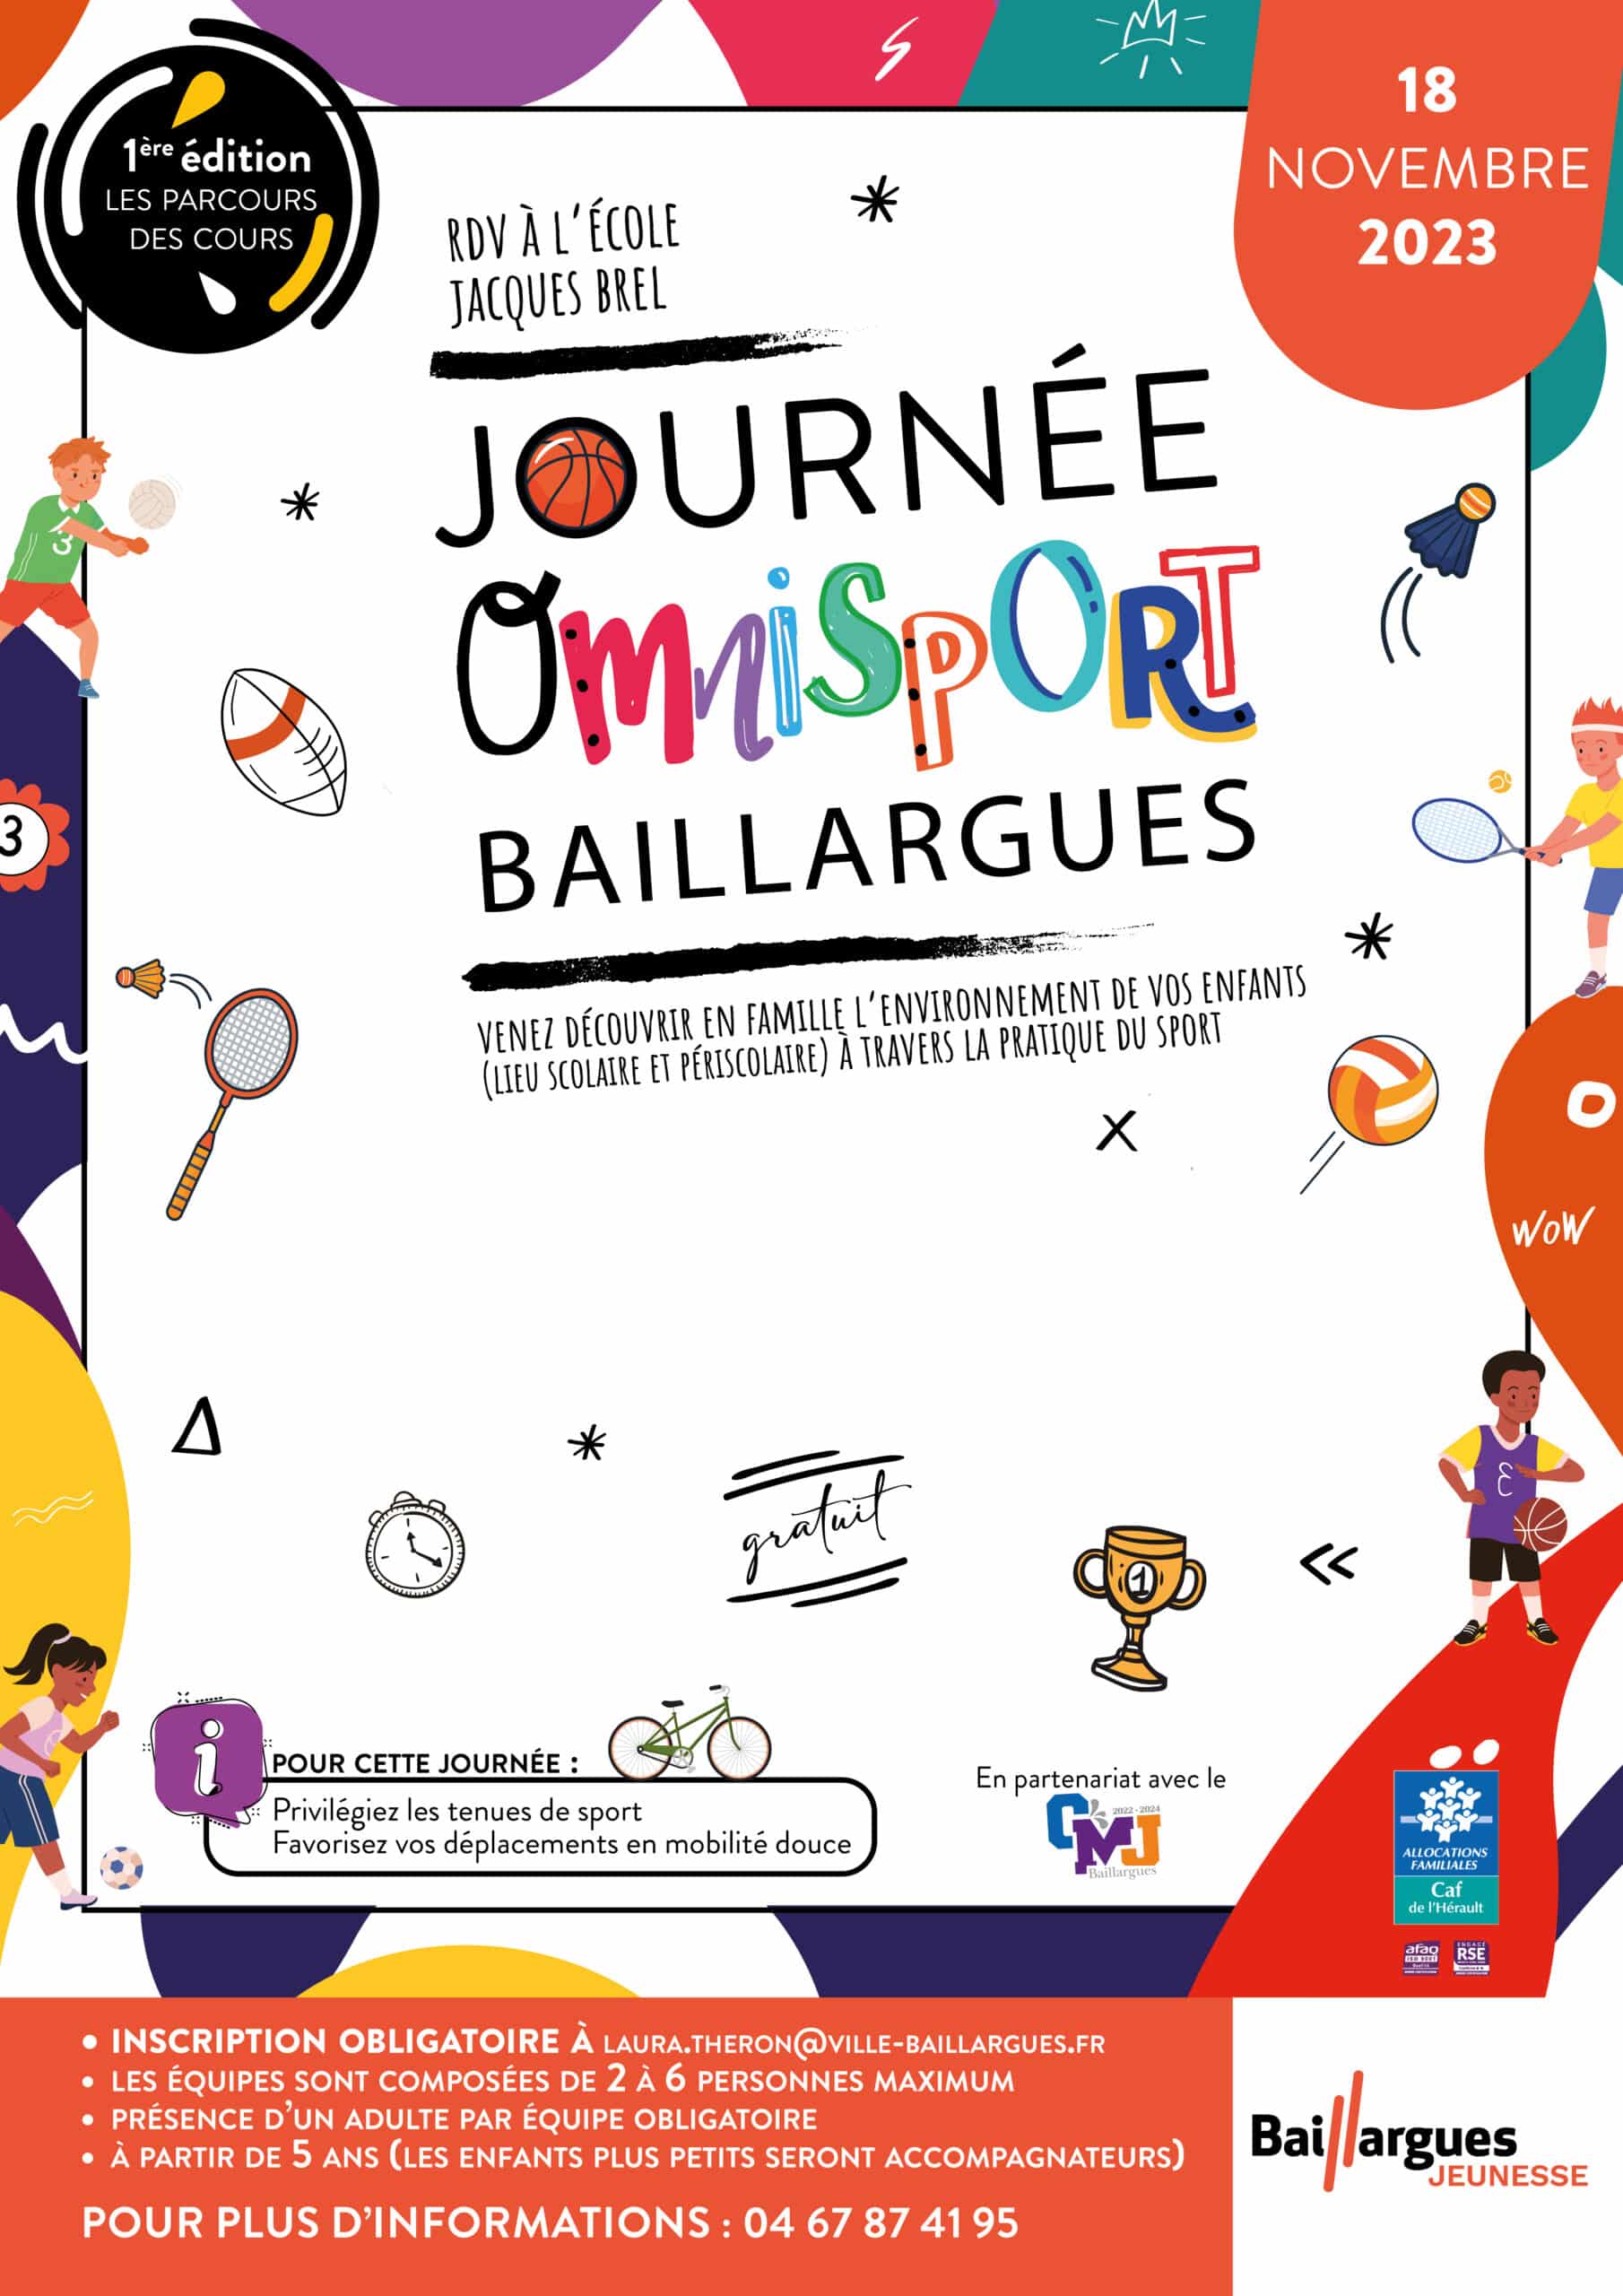 Journée Omnisport Baillargues : un évènement à ne pas louper !